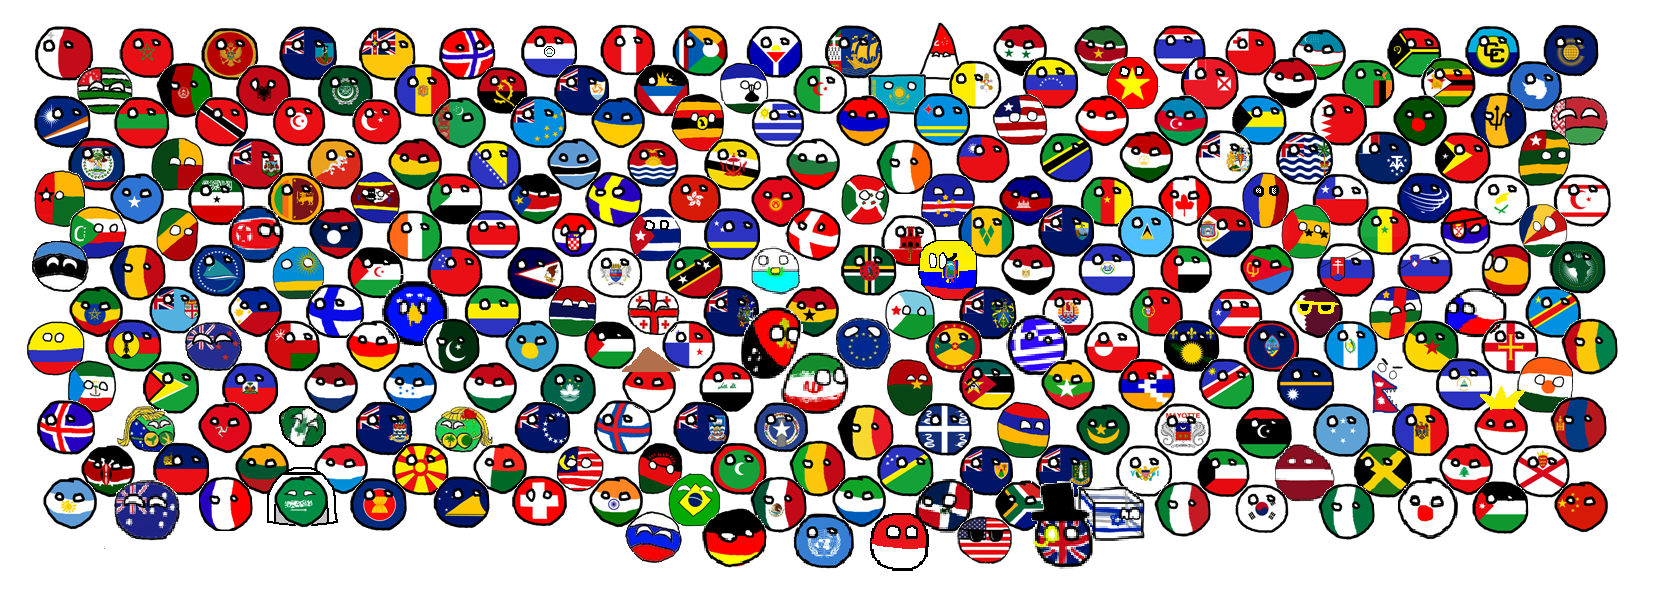 Страны в виде шариков. Кантриболз все страны. Человечки в виде флагов стран. Страны в виде кругов. Все страны круги